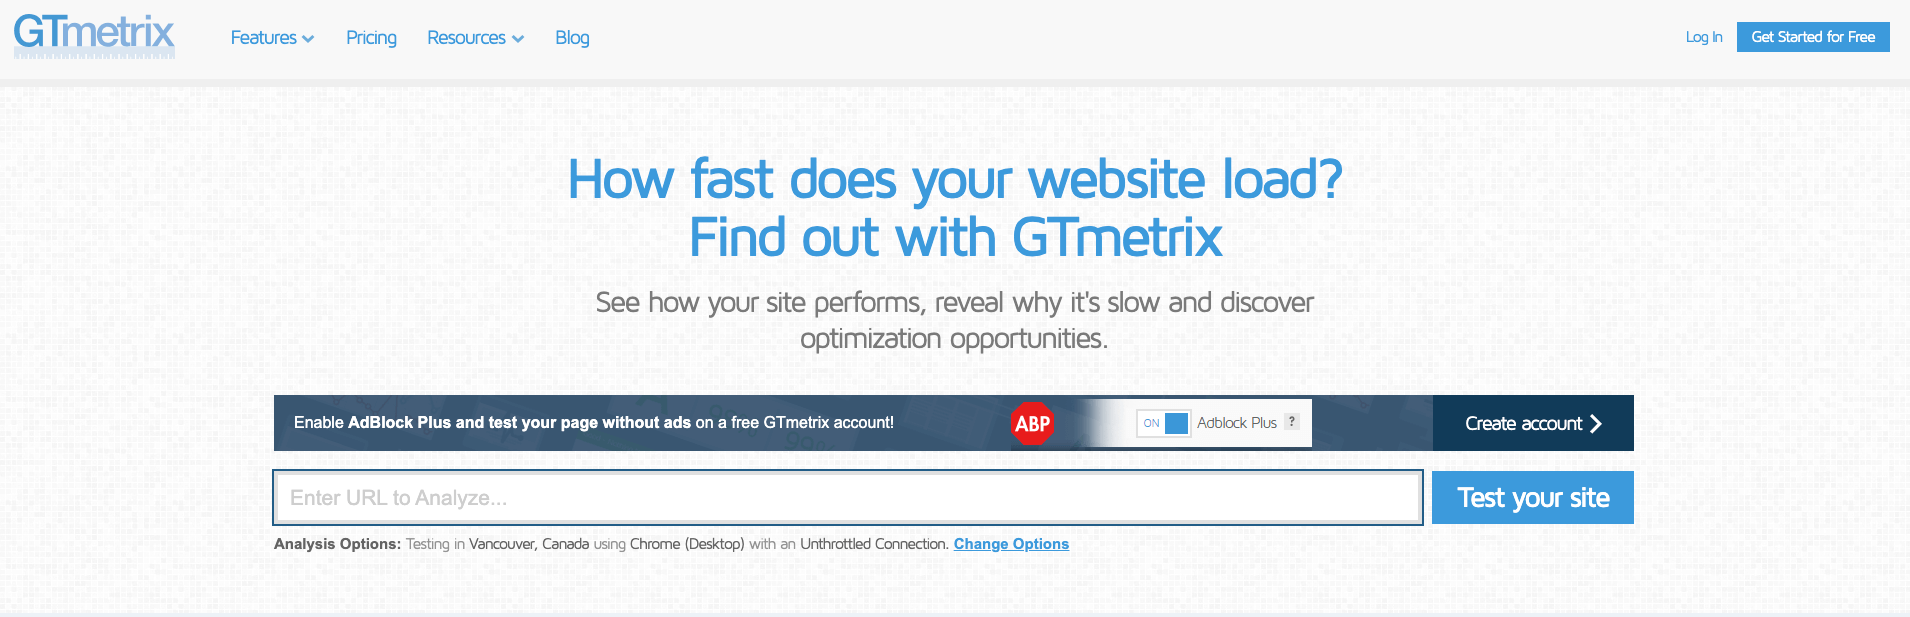 Homepage of GTmetrix